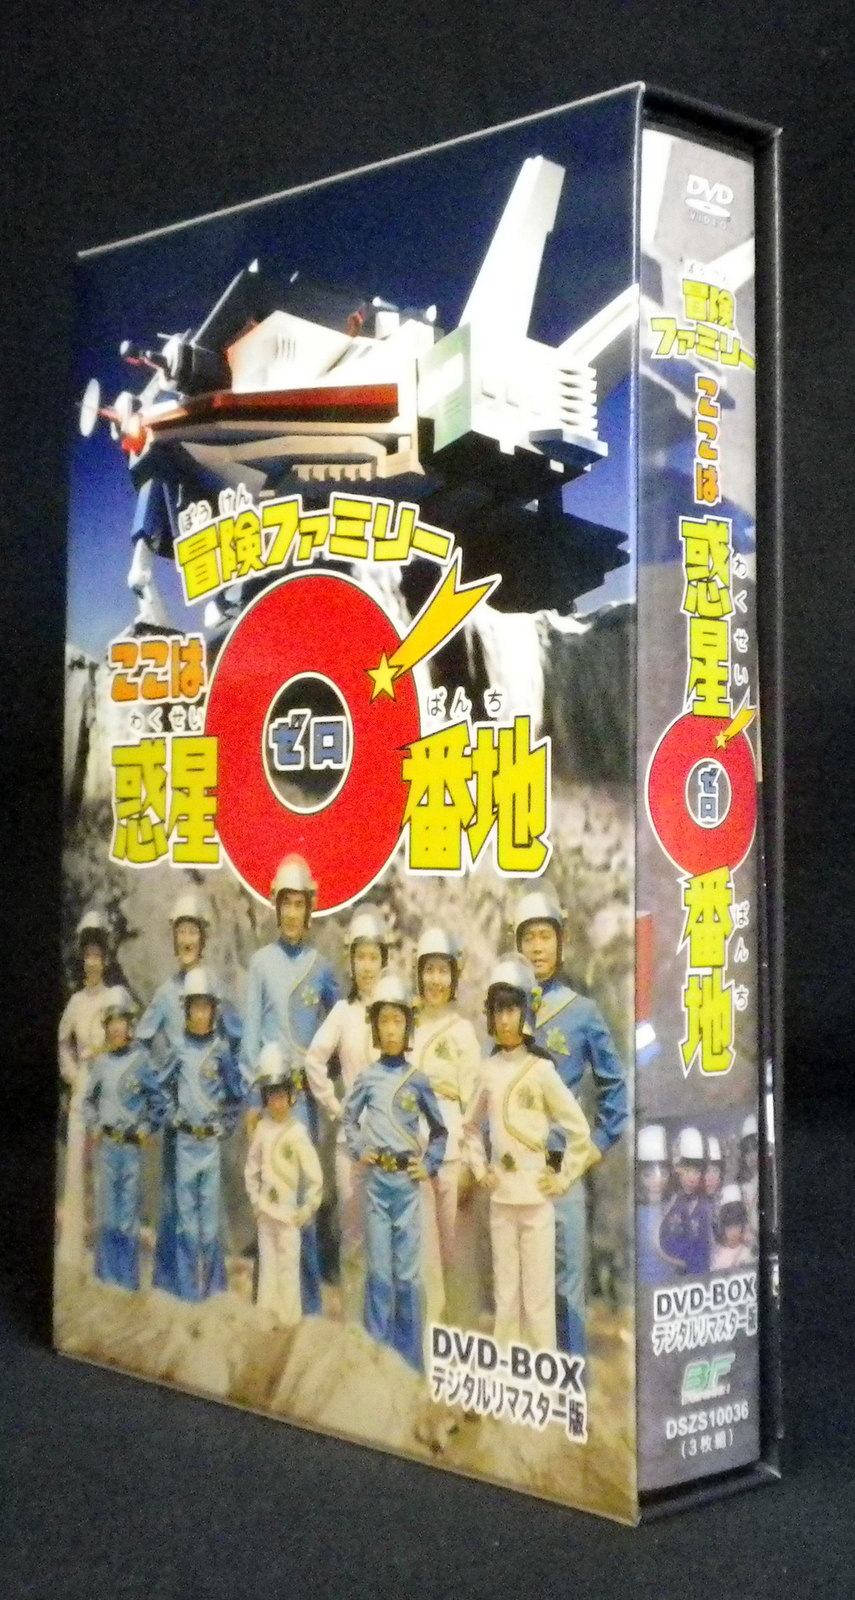 冒険ファミリー ここは惑星0番地 DVD-BOX デジタルリマスター版〈3枚組 